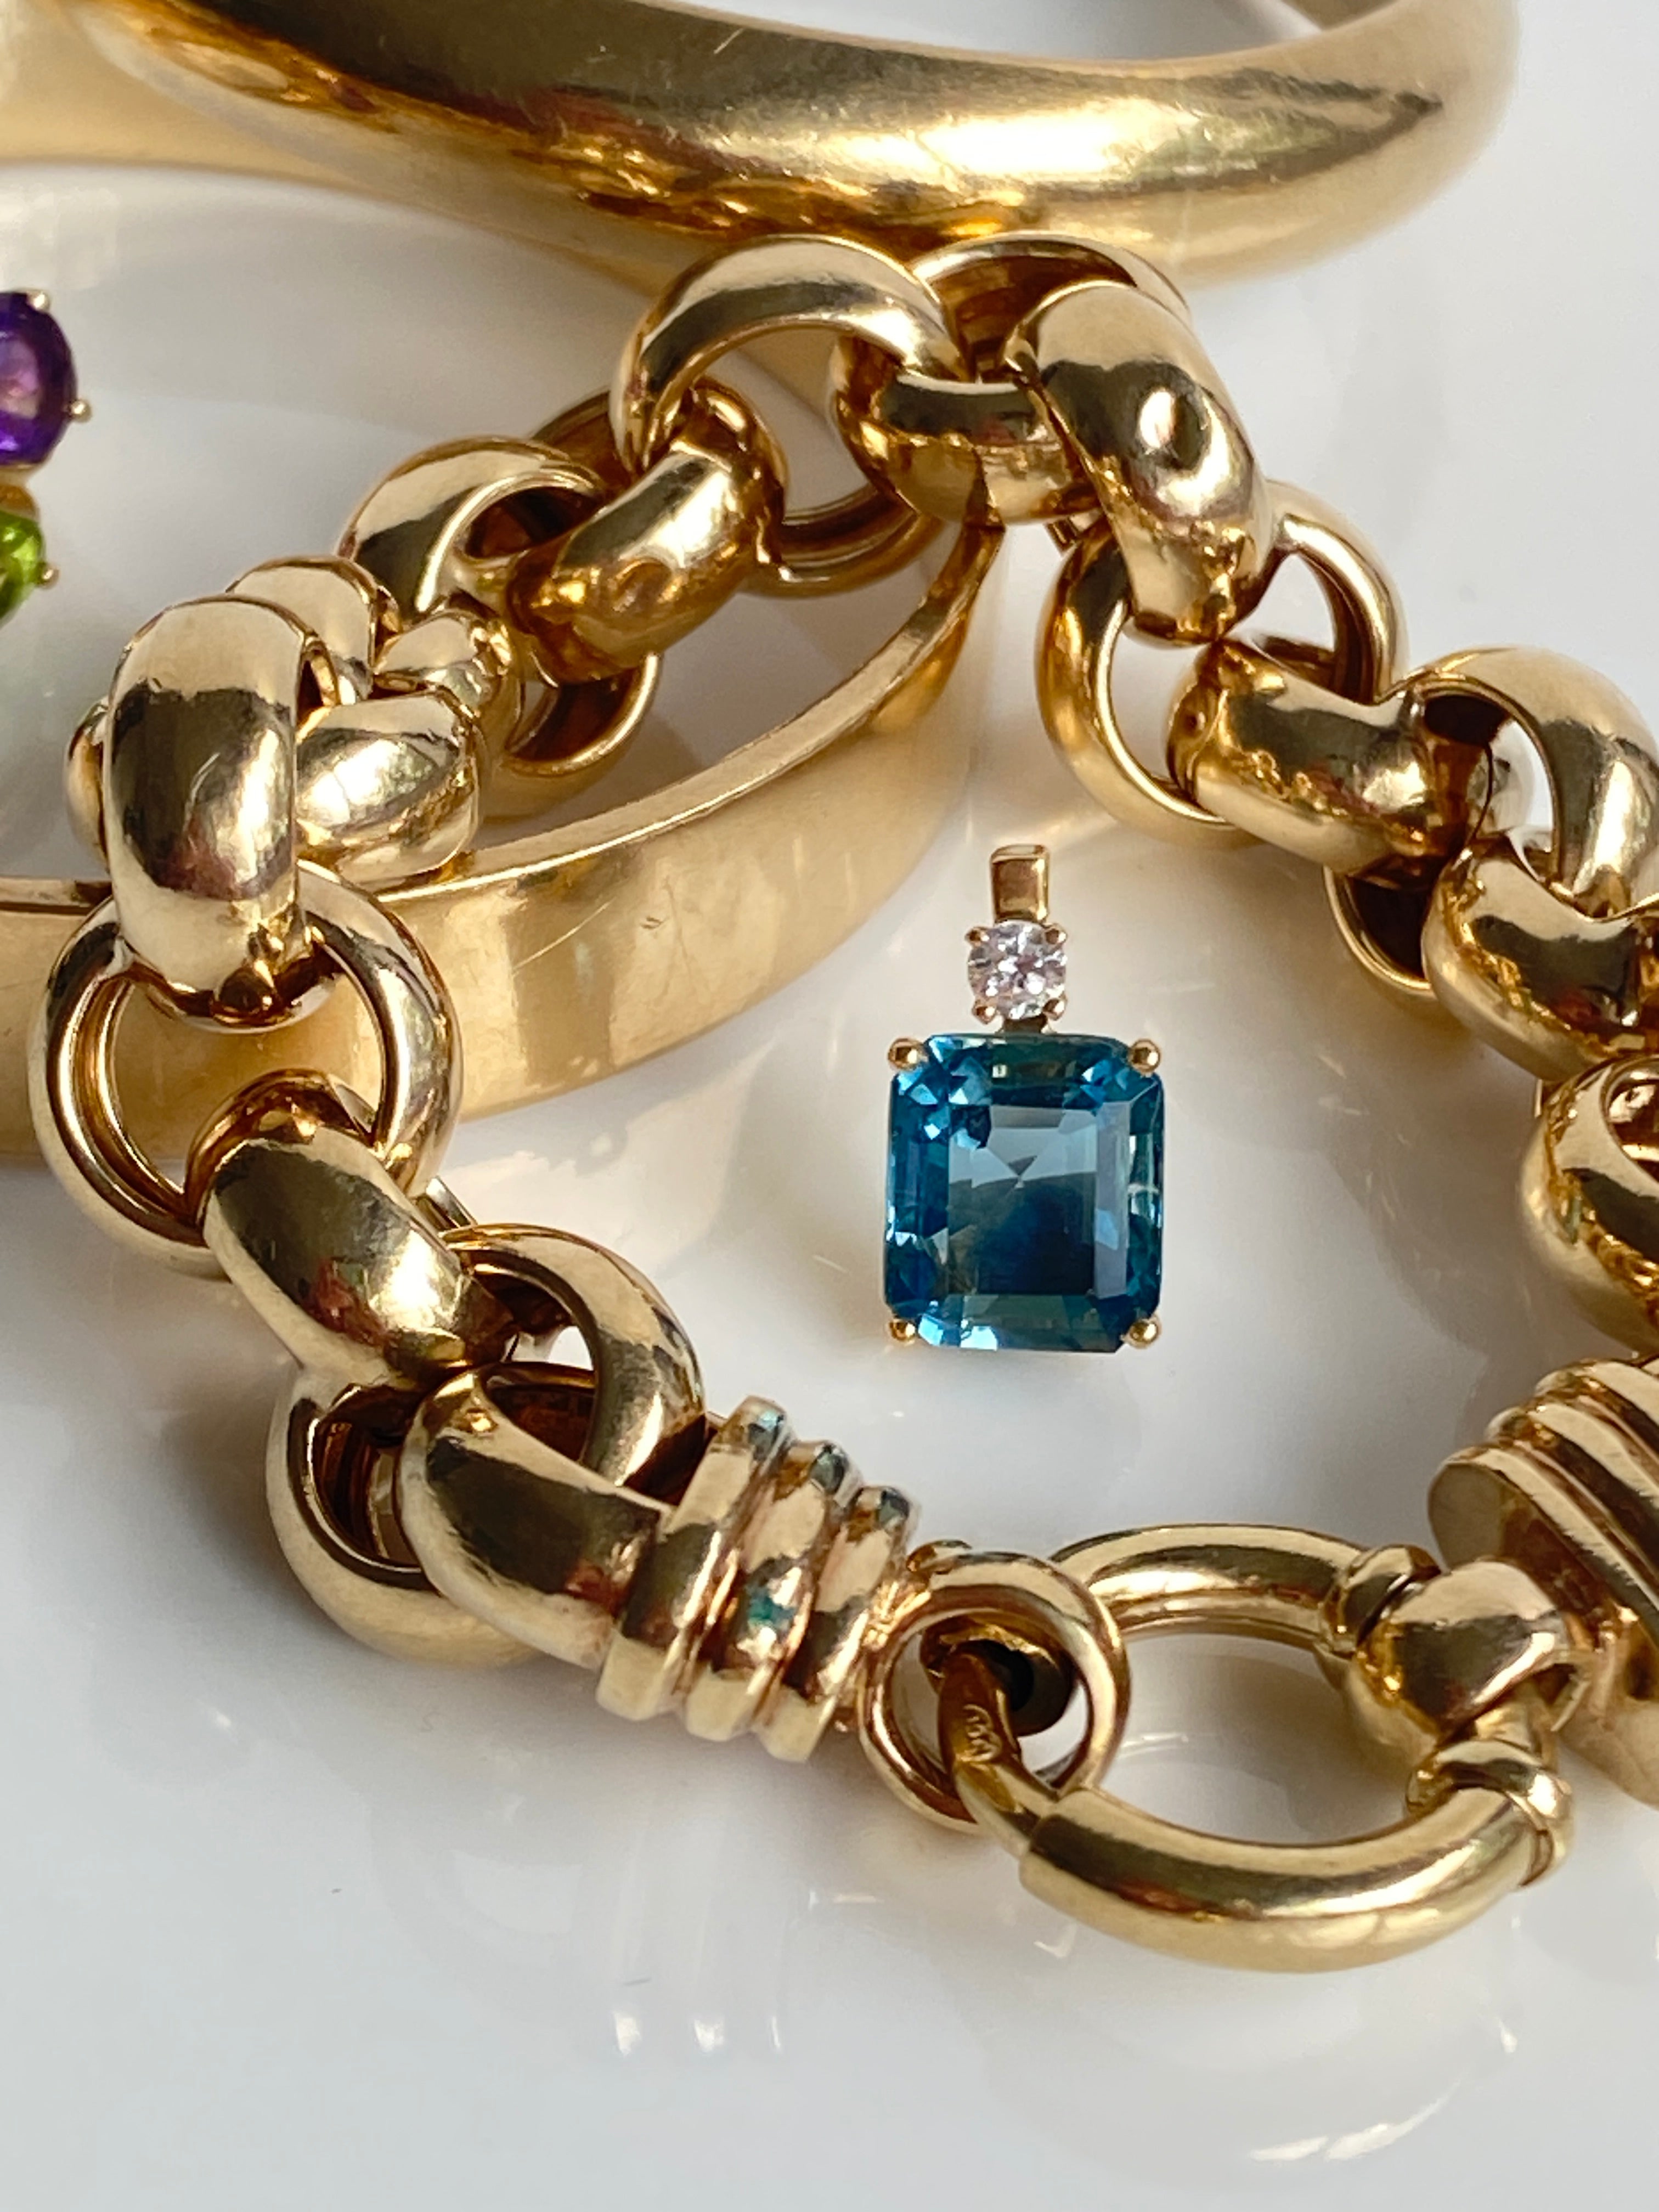 Vintage Aquamarine & Diamond Pendant